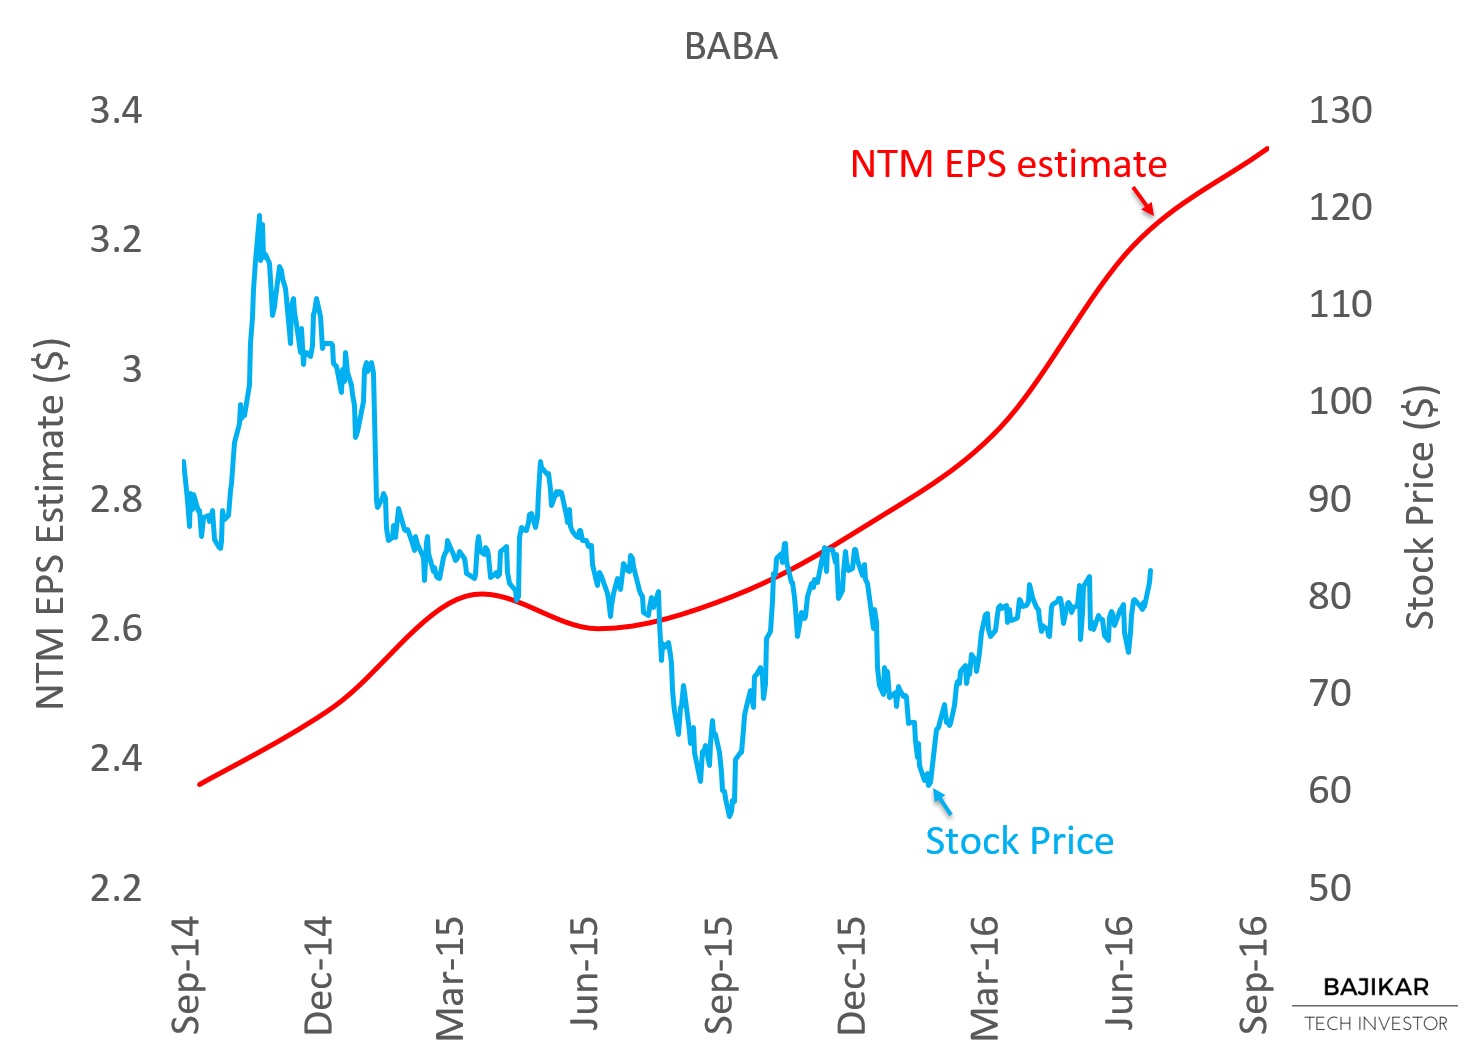 BABA NTM EPS vs. Stock Price